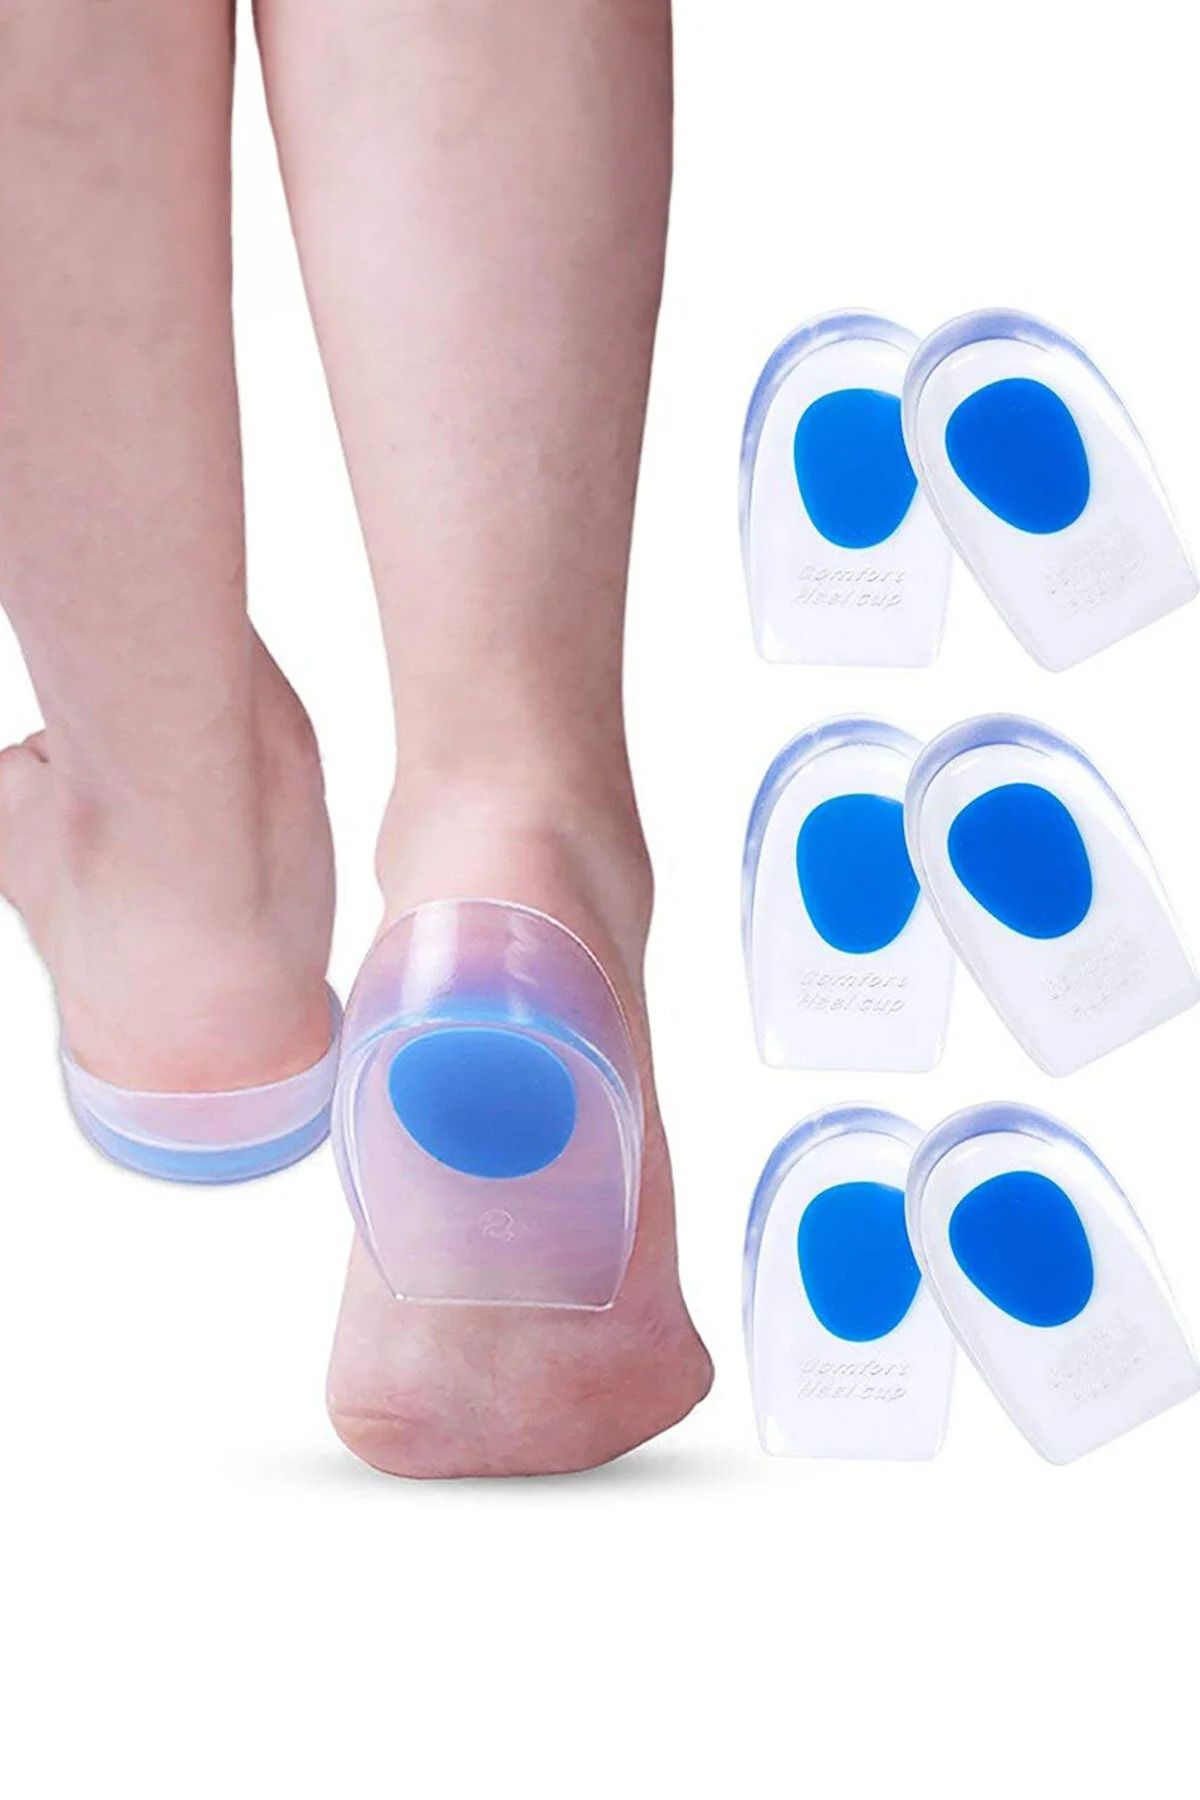 Factorial Ortapedik Jel Topukluk Gizli Topuk Ayakkabı Yastığı Boy Uzatıcı Topuk Dikeni Kadın Erkek 2 Adet